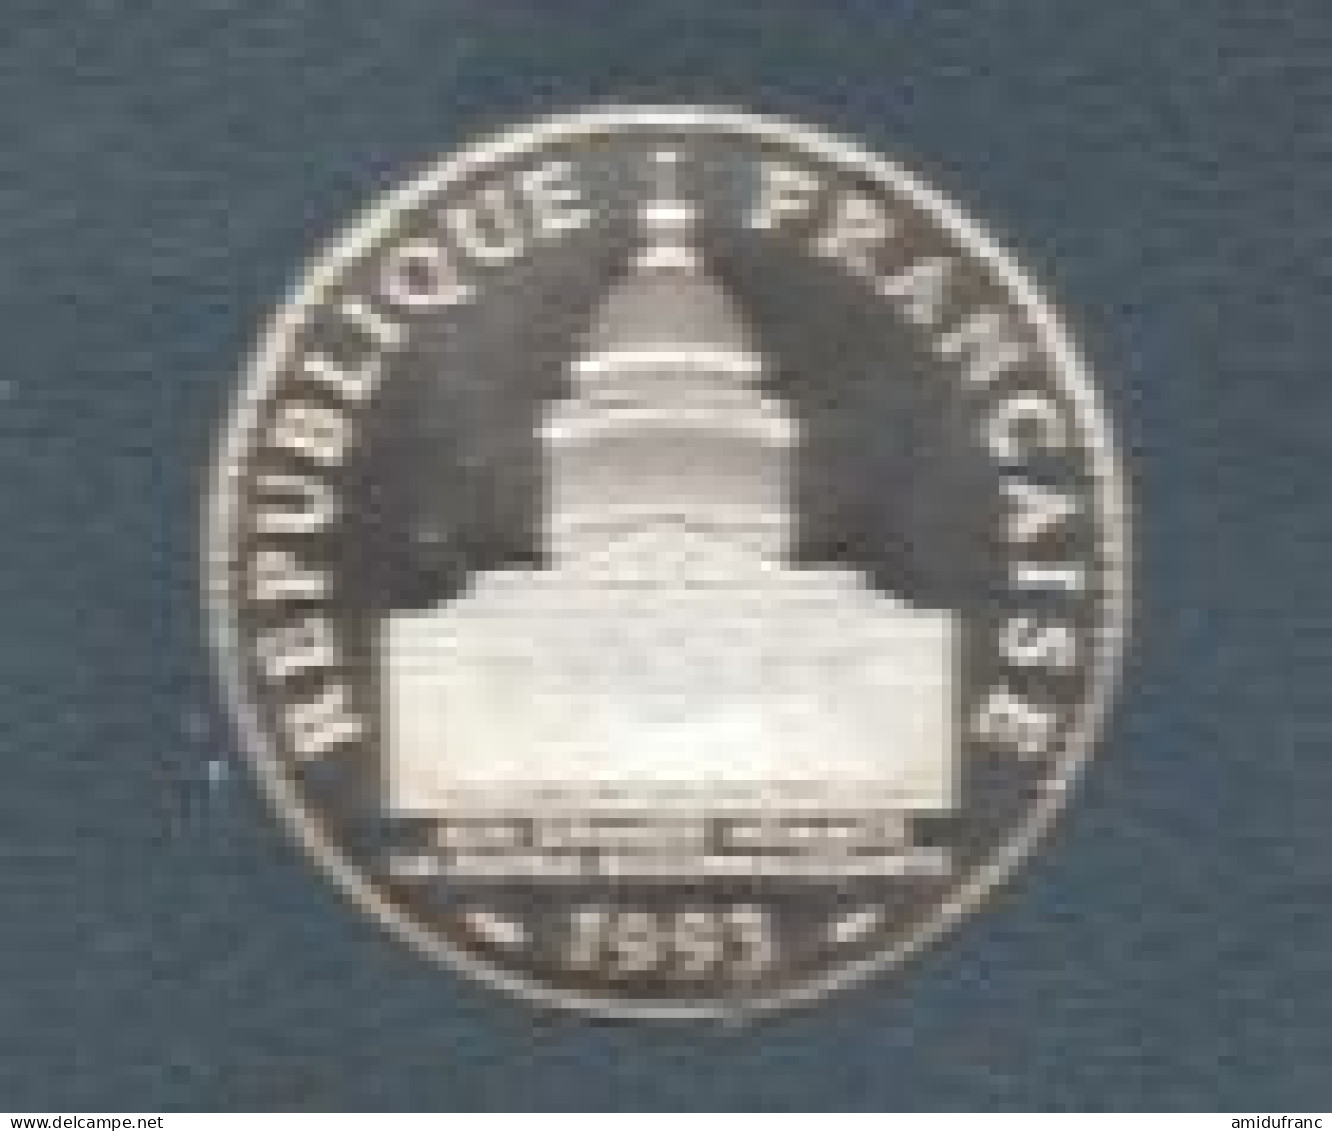 100 Francs Panthéon 1993 BE Du Coffret - BU, Proofs & Presentation Cases